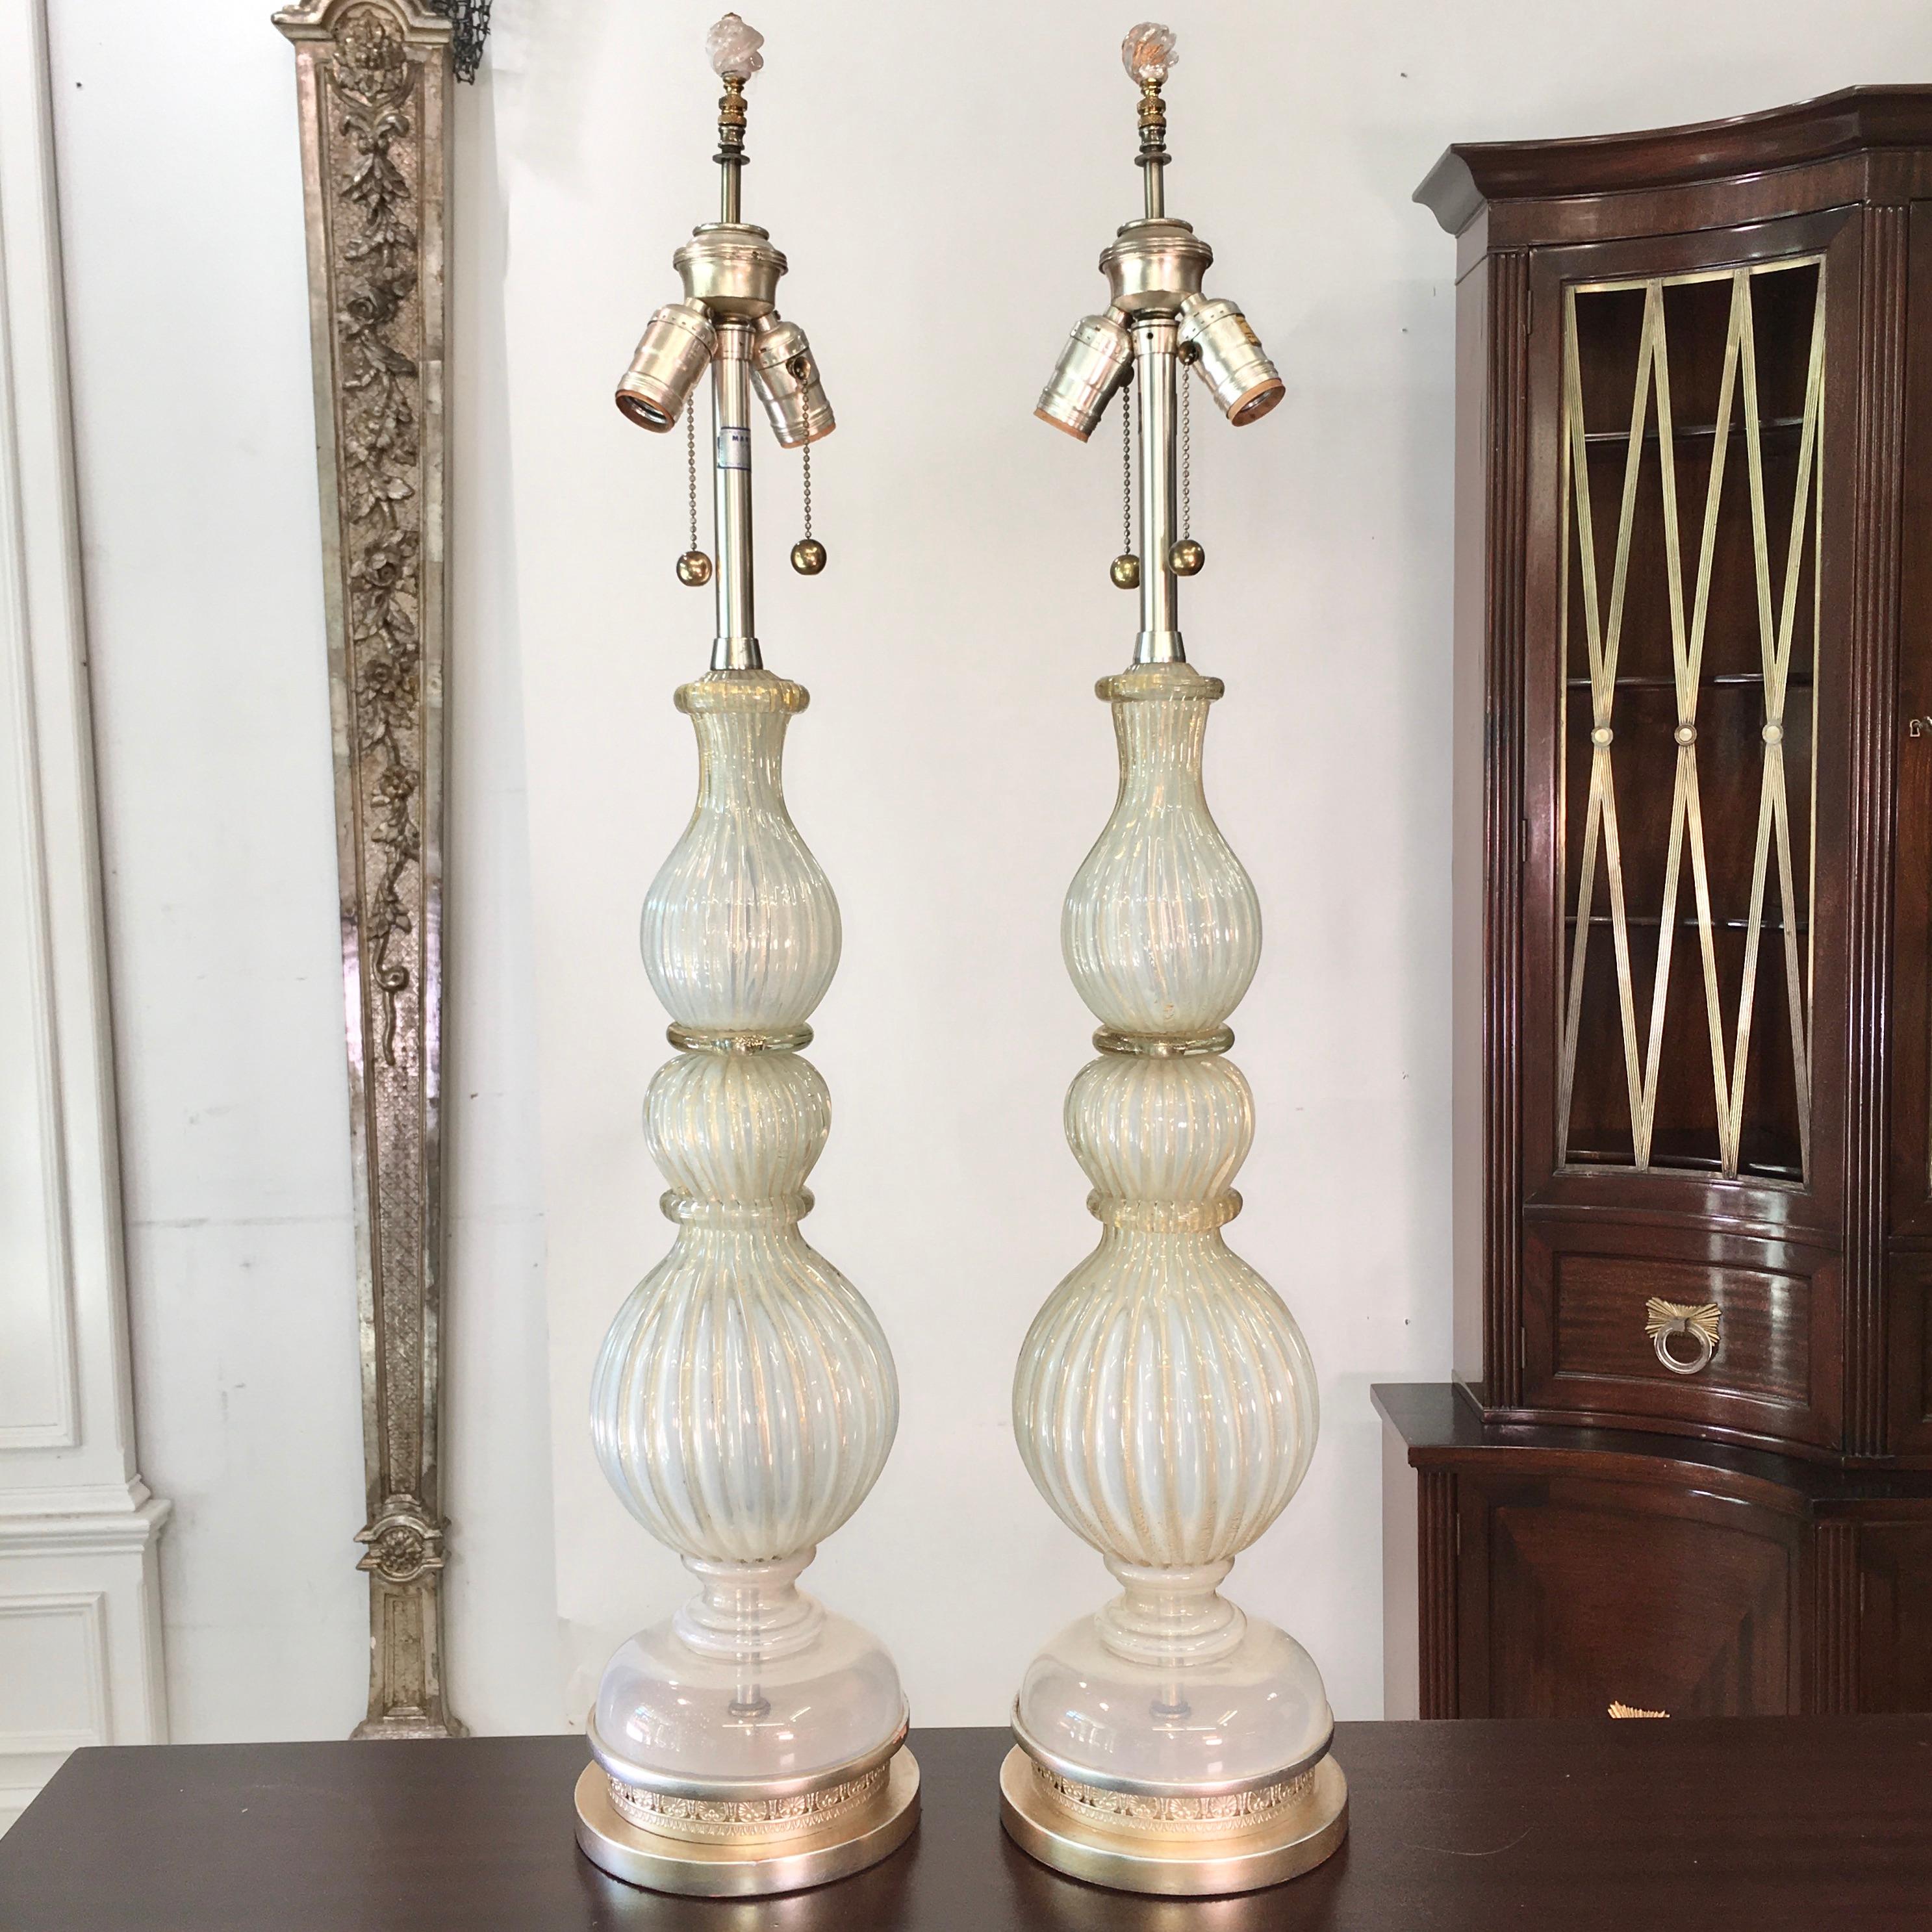 Paire de lampes de table originales en verre de Murano de grande taille par Archimede Seguso importées par The Marbro Lamp Co. vers 1960. Les deux lampes sont signées.
Verre opalescent strié blanc argenté avec des mouchetures d'or. Les bases ont